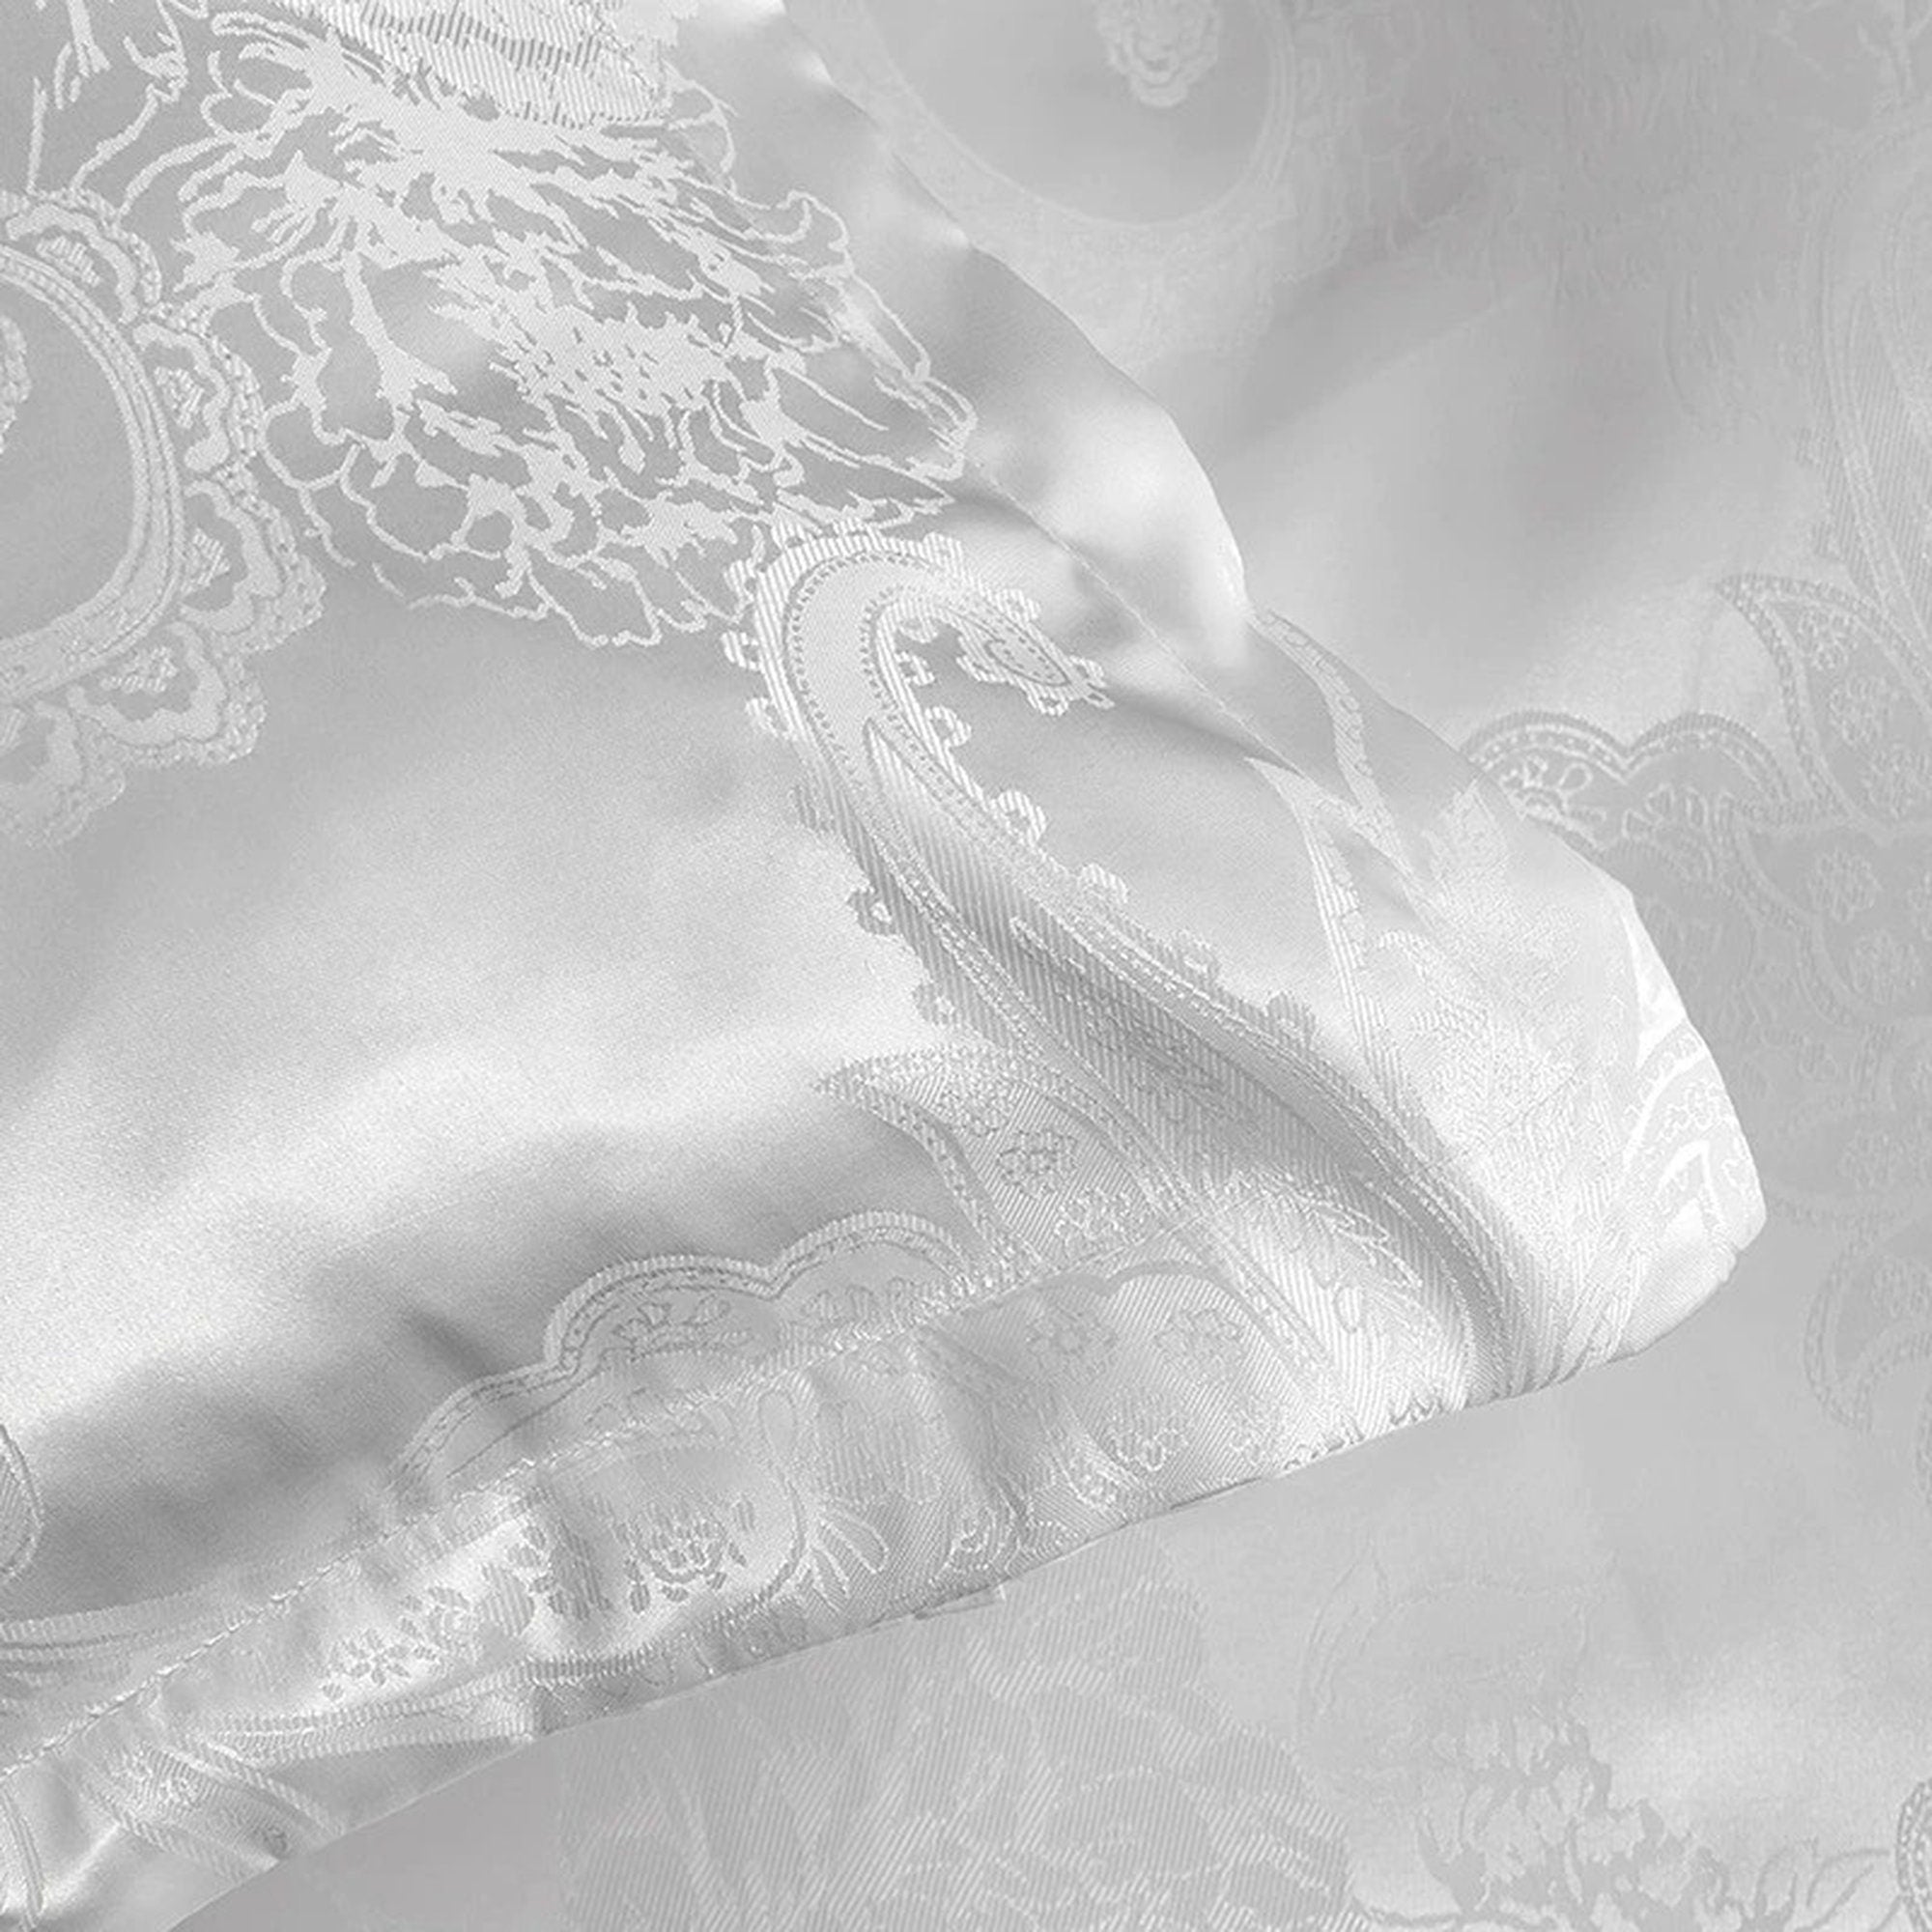 daintyduvet Luxury Damask Bedding made with Silky Jacquard Fabric, White Duvet Cover Set, Designer Bedding, Aesthetic Duvet King Queen Full Twin